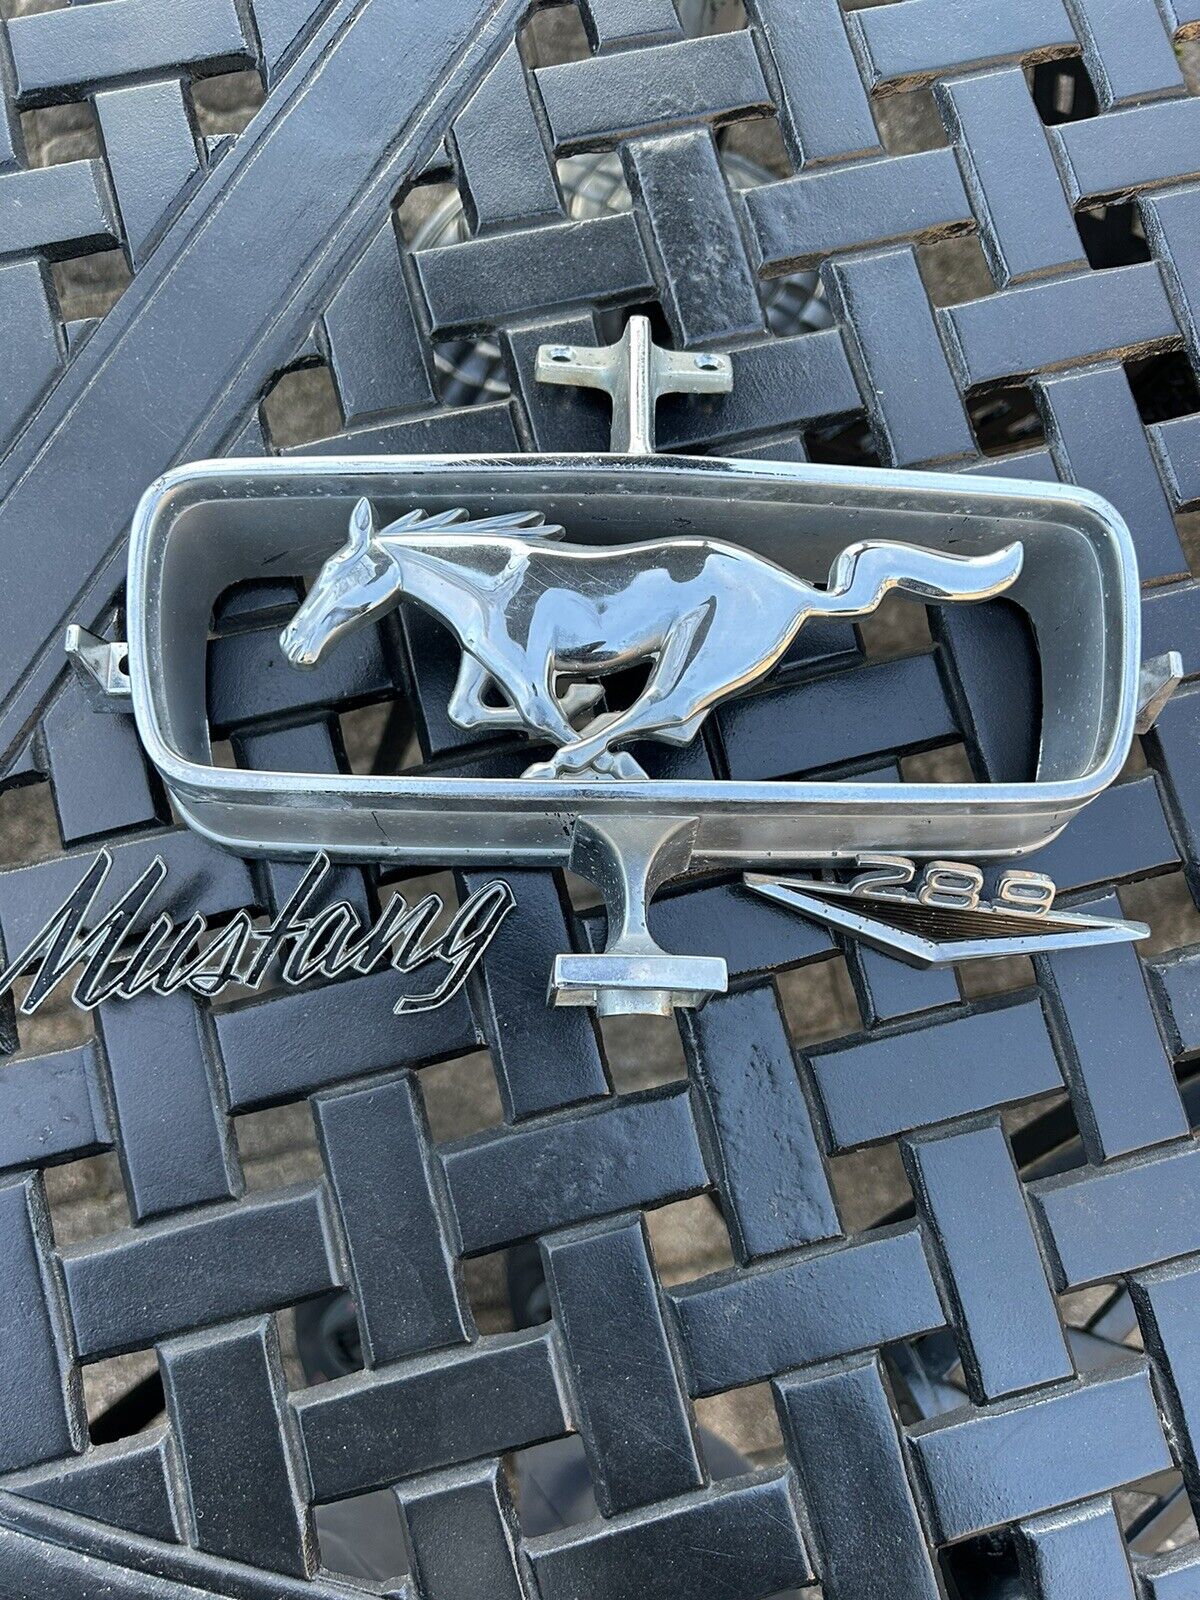 Original 1964 1/2 Mustang emblem/ Ornaments